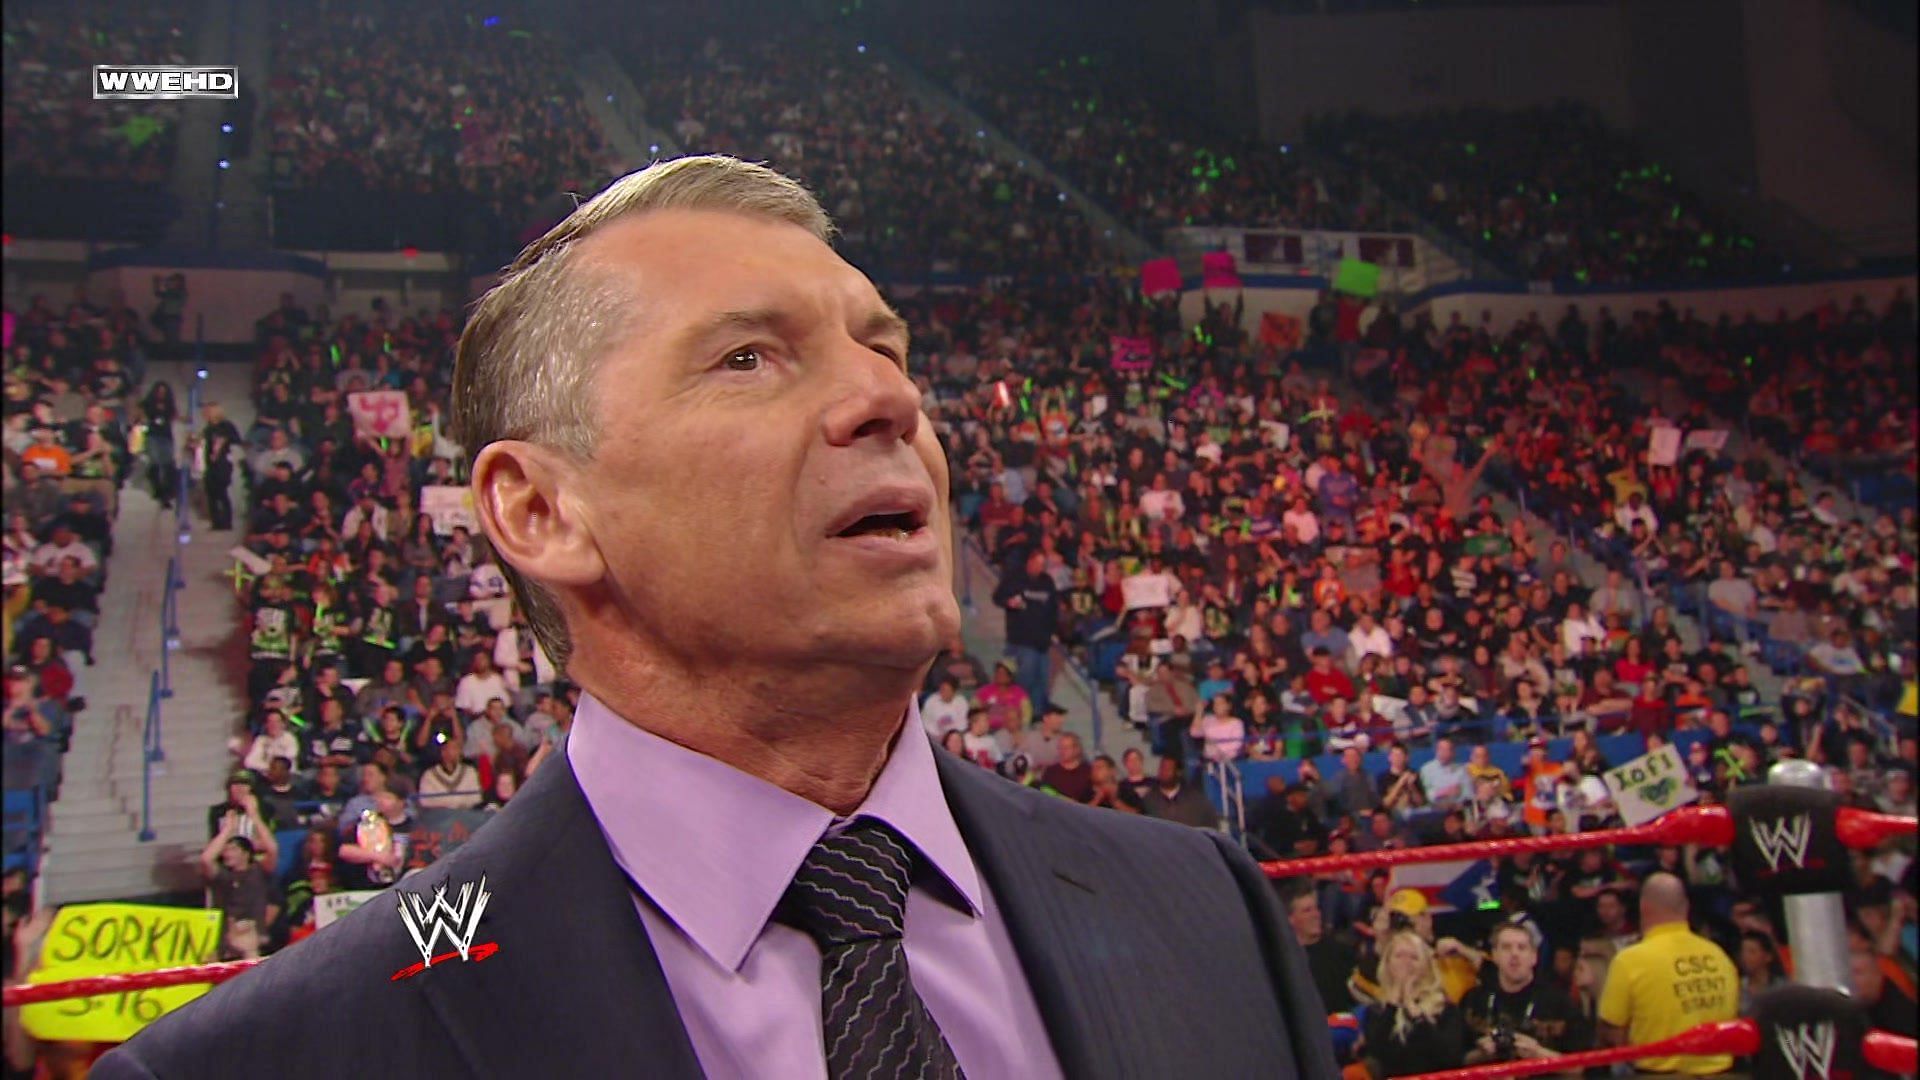 Executive chairman of WWE, Vince McMahon